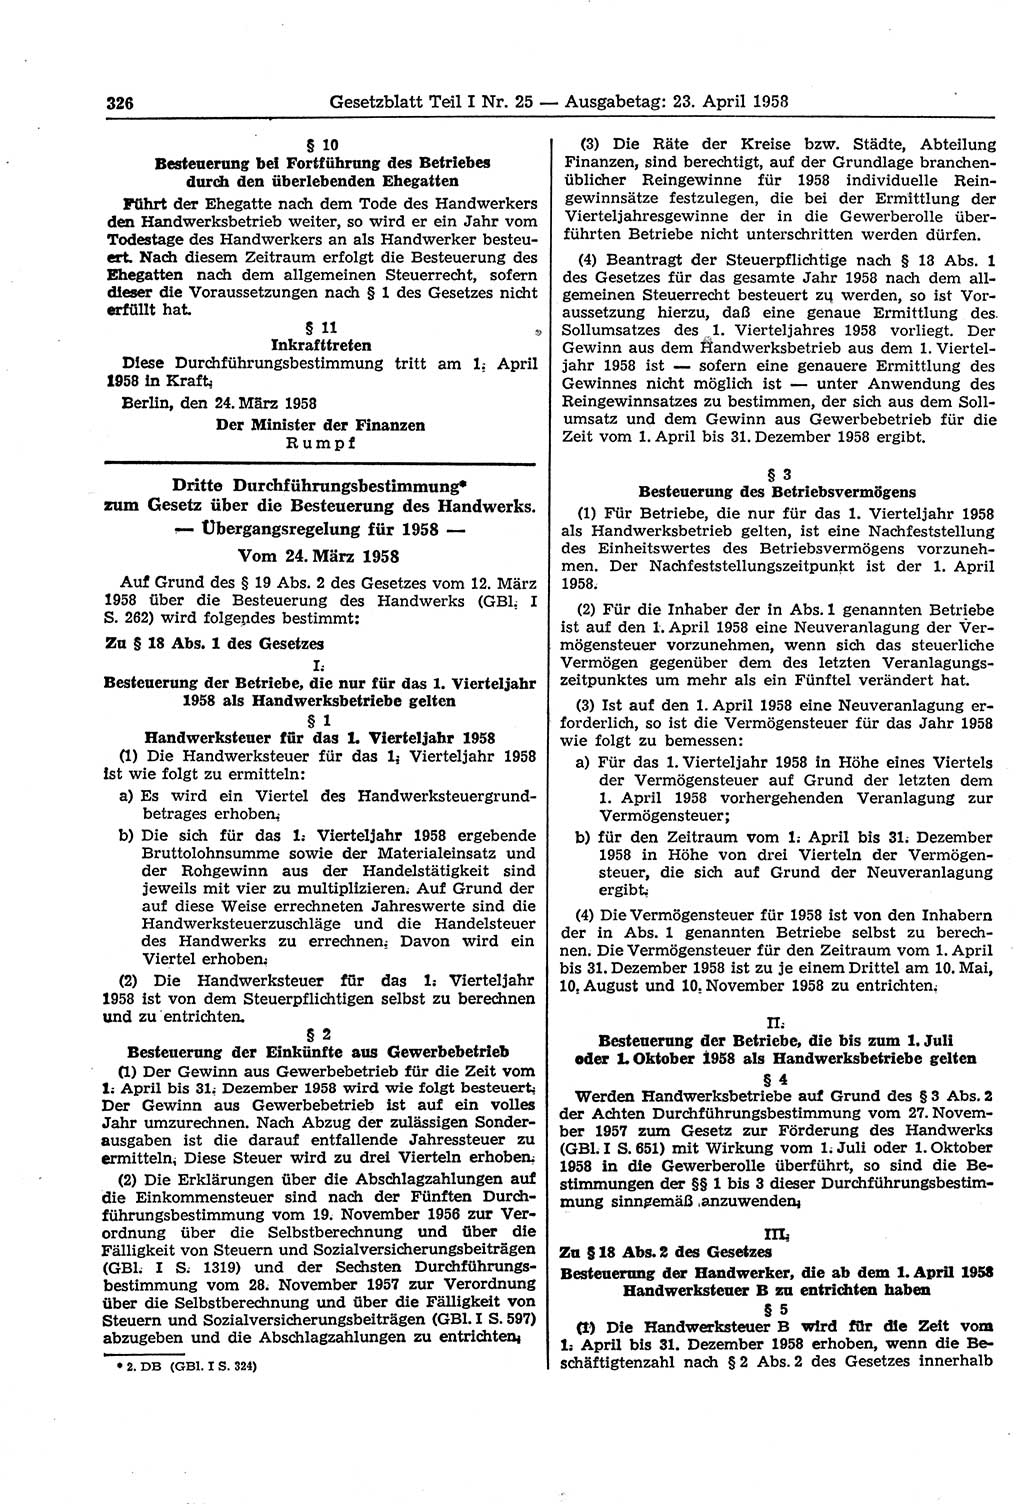 Gesetzblatt (GBl.) der Deutschen Demokratischen Republik (DDR) Teil Ⅰ 1958, Seite 326 (GBl. DDR Ⅰ 1958, S. 326)